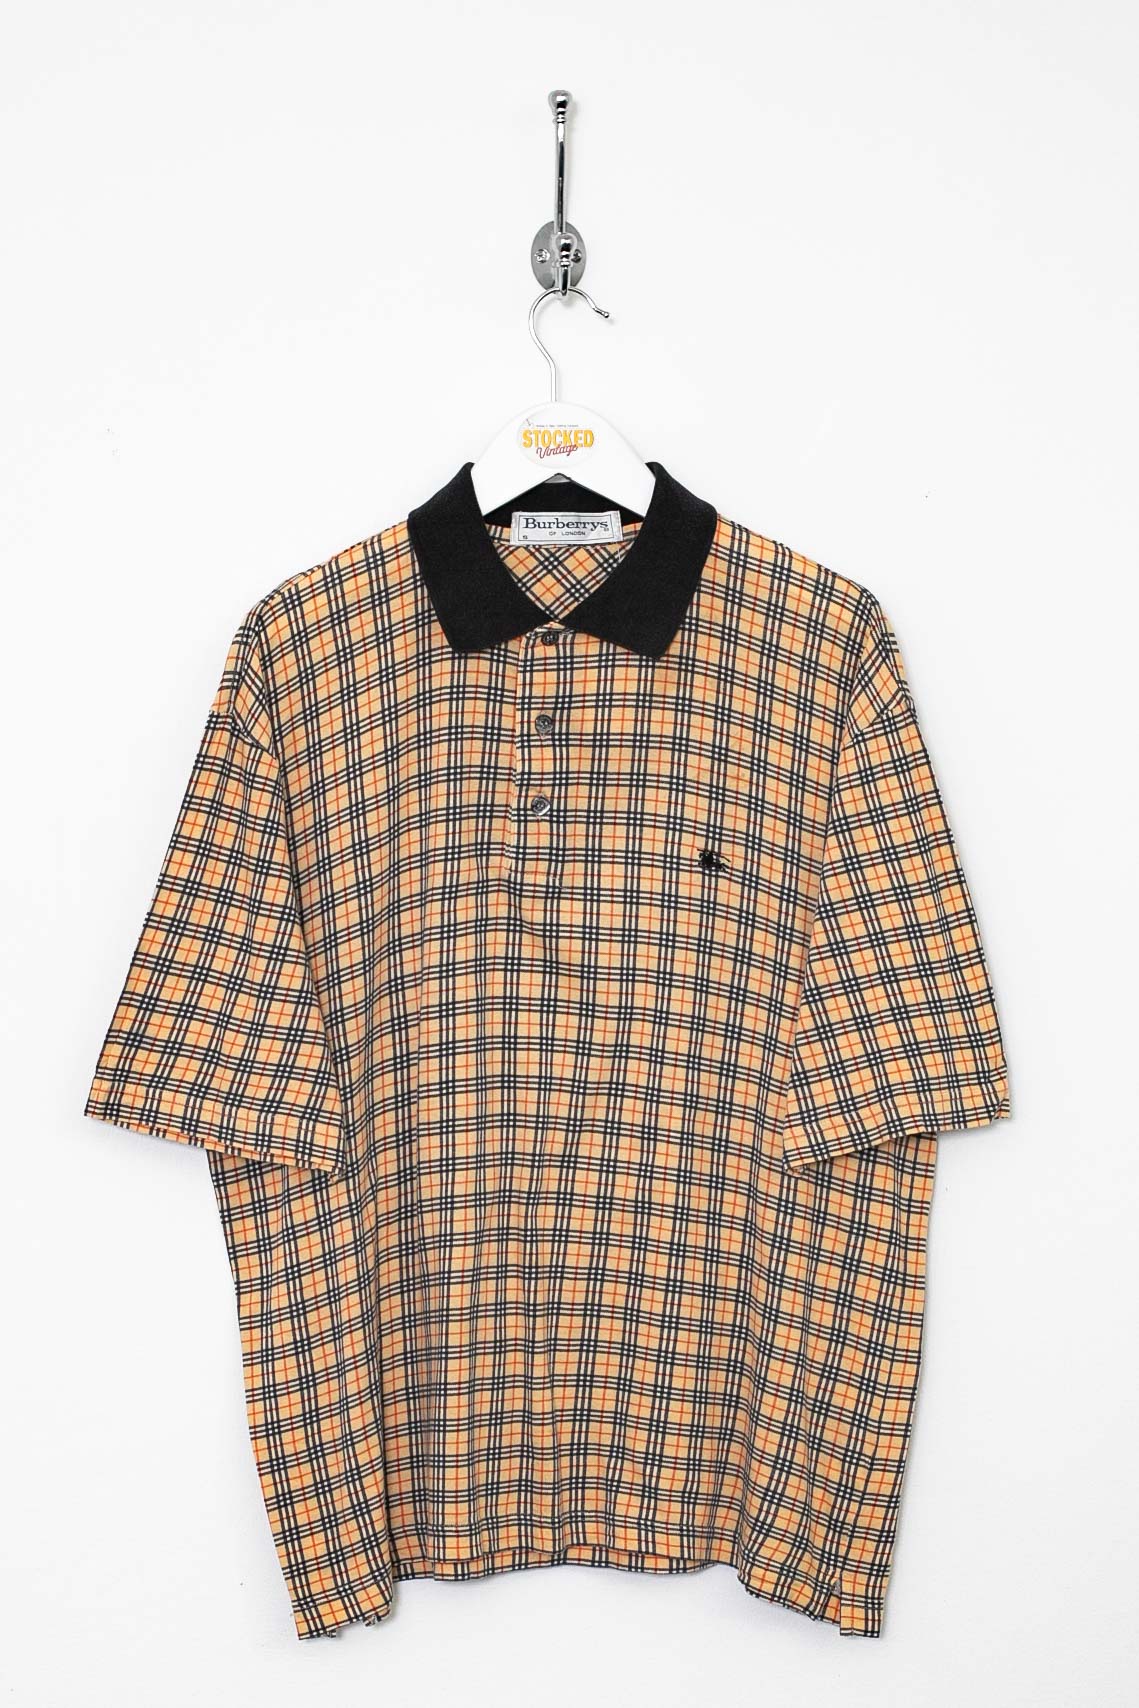 90s Burberry Nova Check Polo Shirt (S)